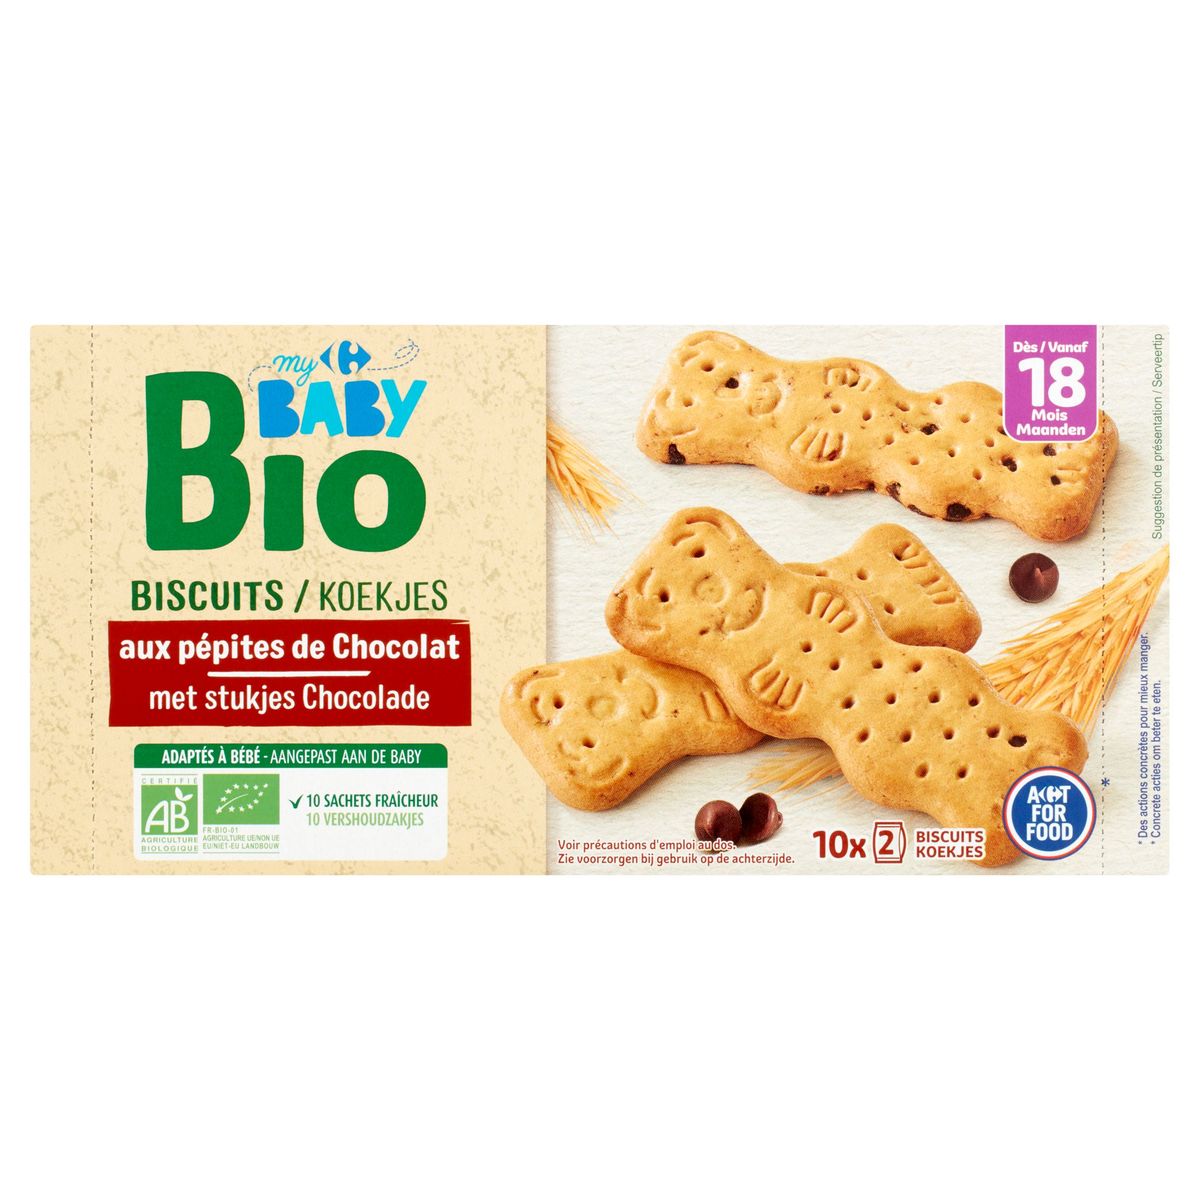 Biscuits adaptés à bébé - Mots d'enfants - 180g (environ 33 biscuits)